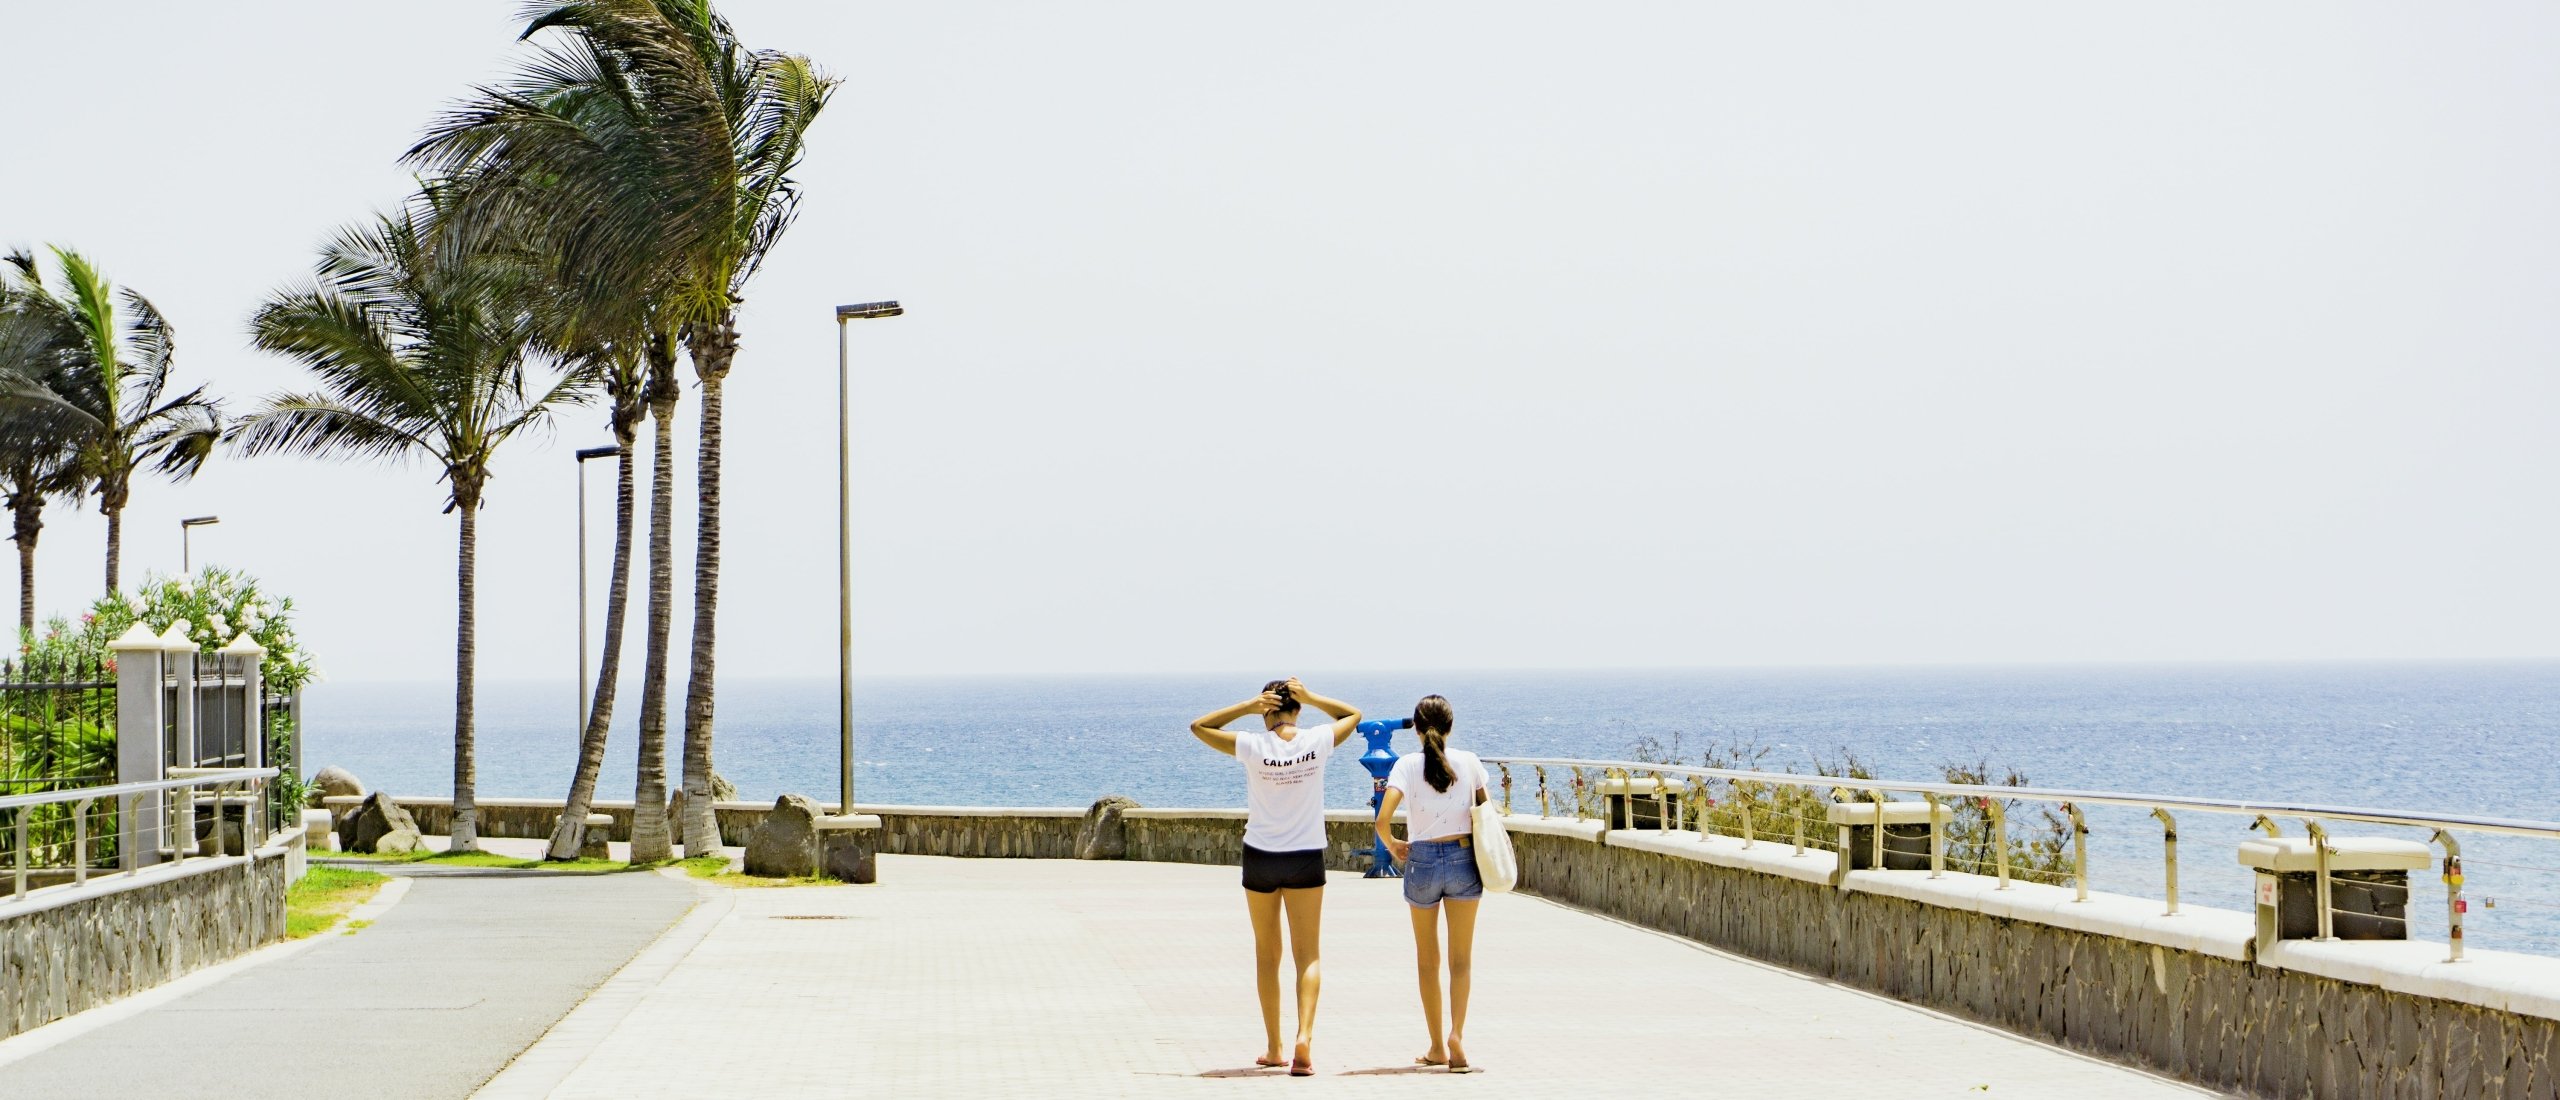 Playa del Inglés op Gran Canaria - Wat is er te doen? - Webcam | WeezeAirport.nl